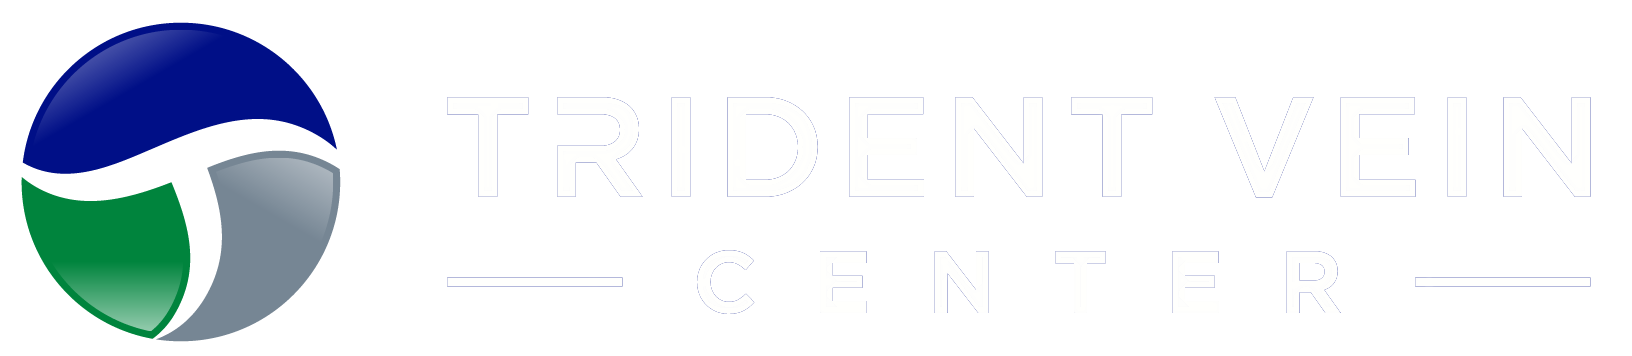 Trident Vein Center Logo